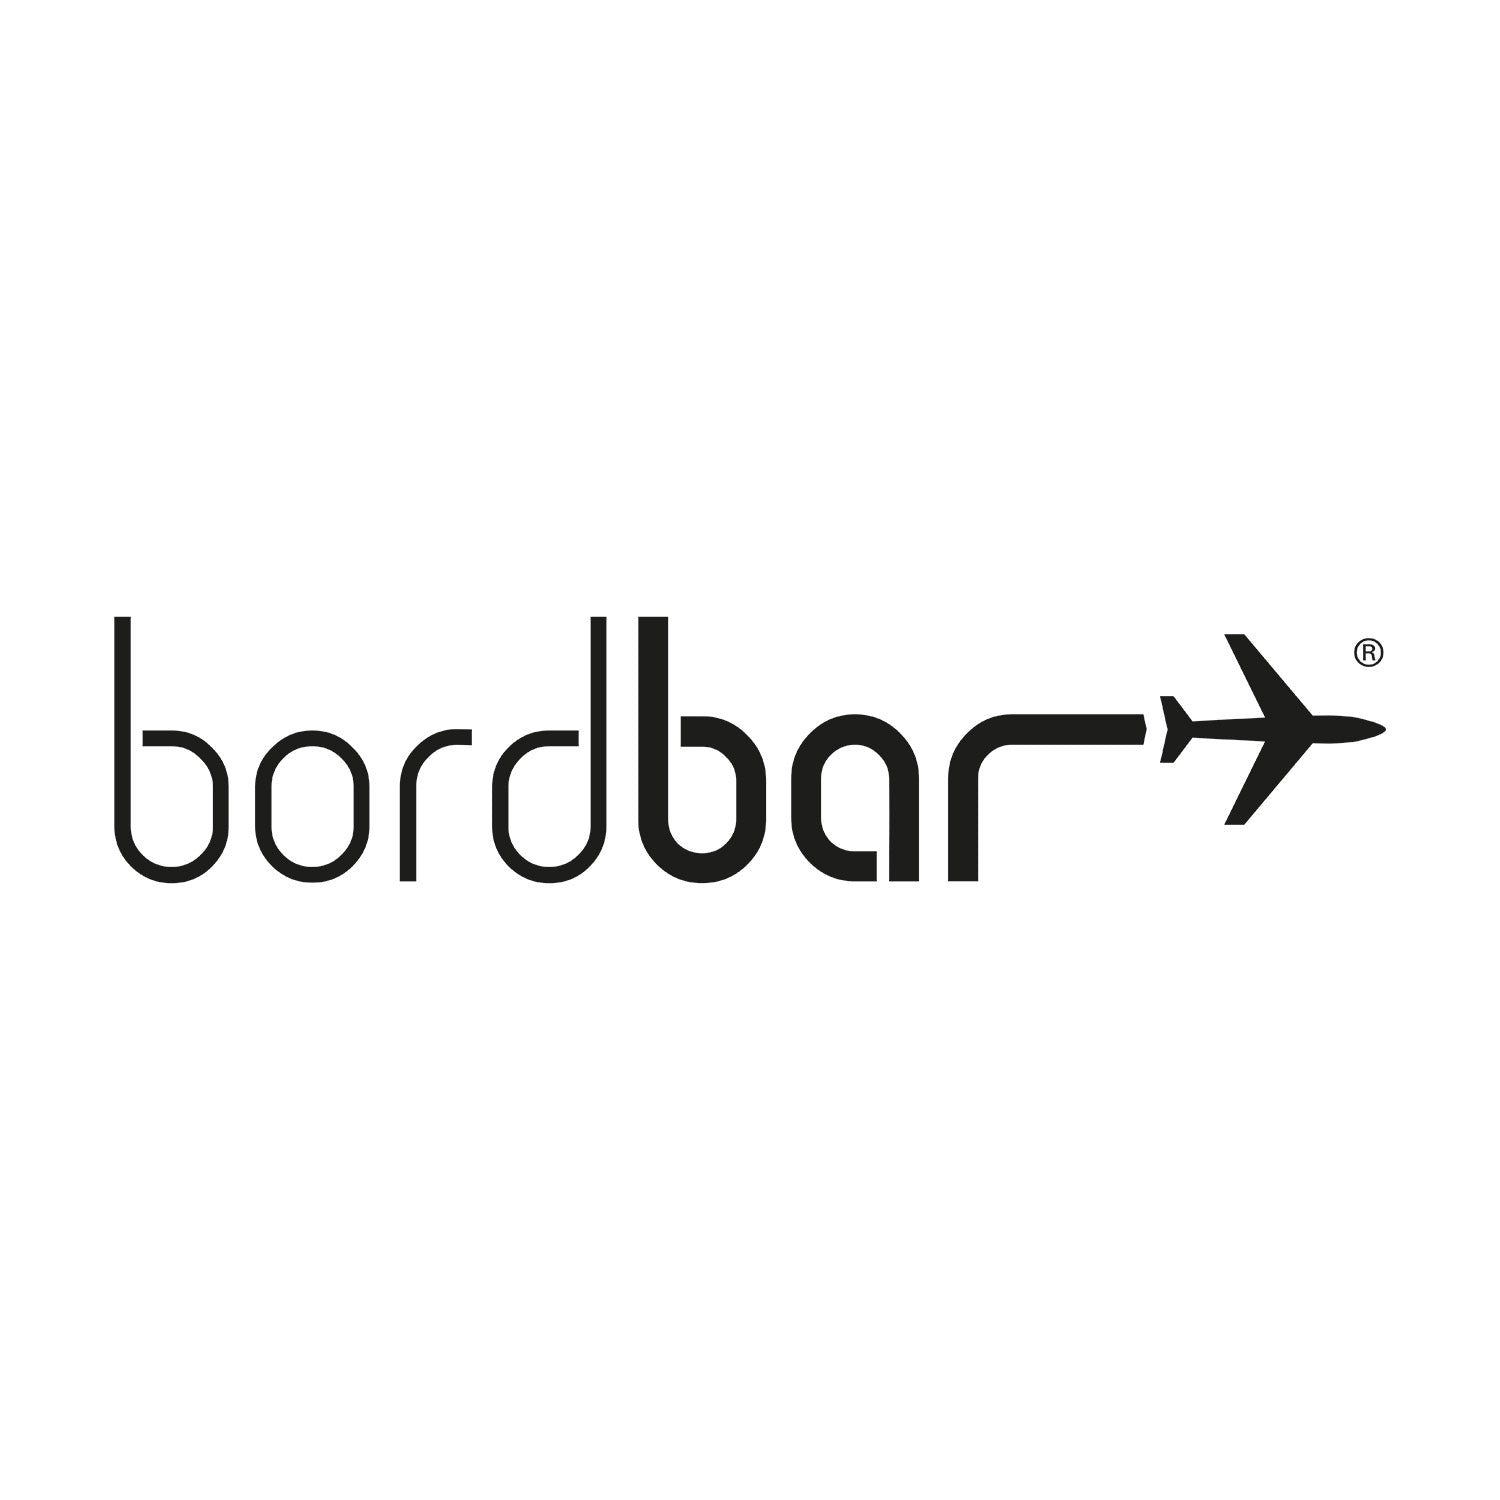 Bordbar_Logo 1500x1500 72.jpg__PID:0a16f9cf-3df0-4491-aed8-cecf2eea5292